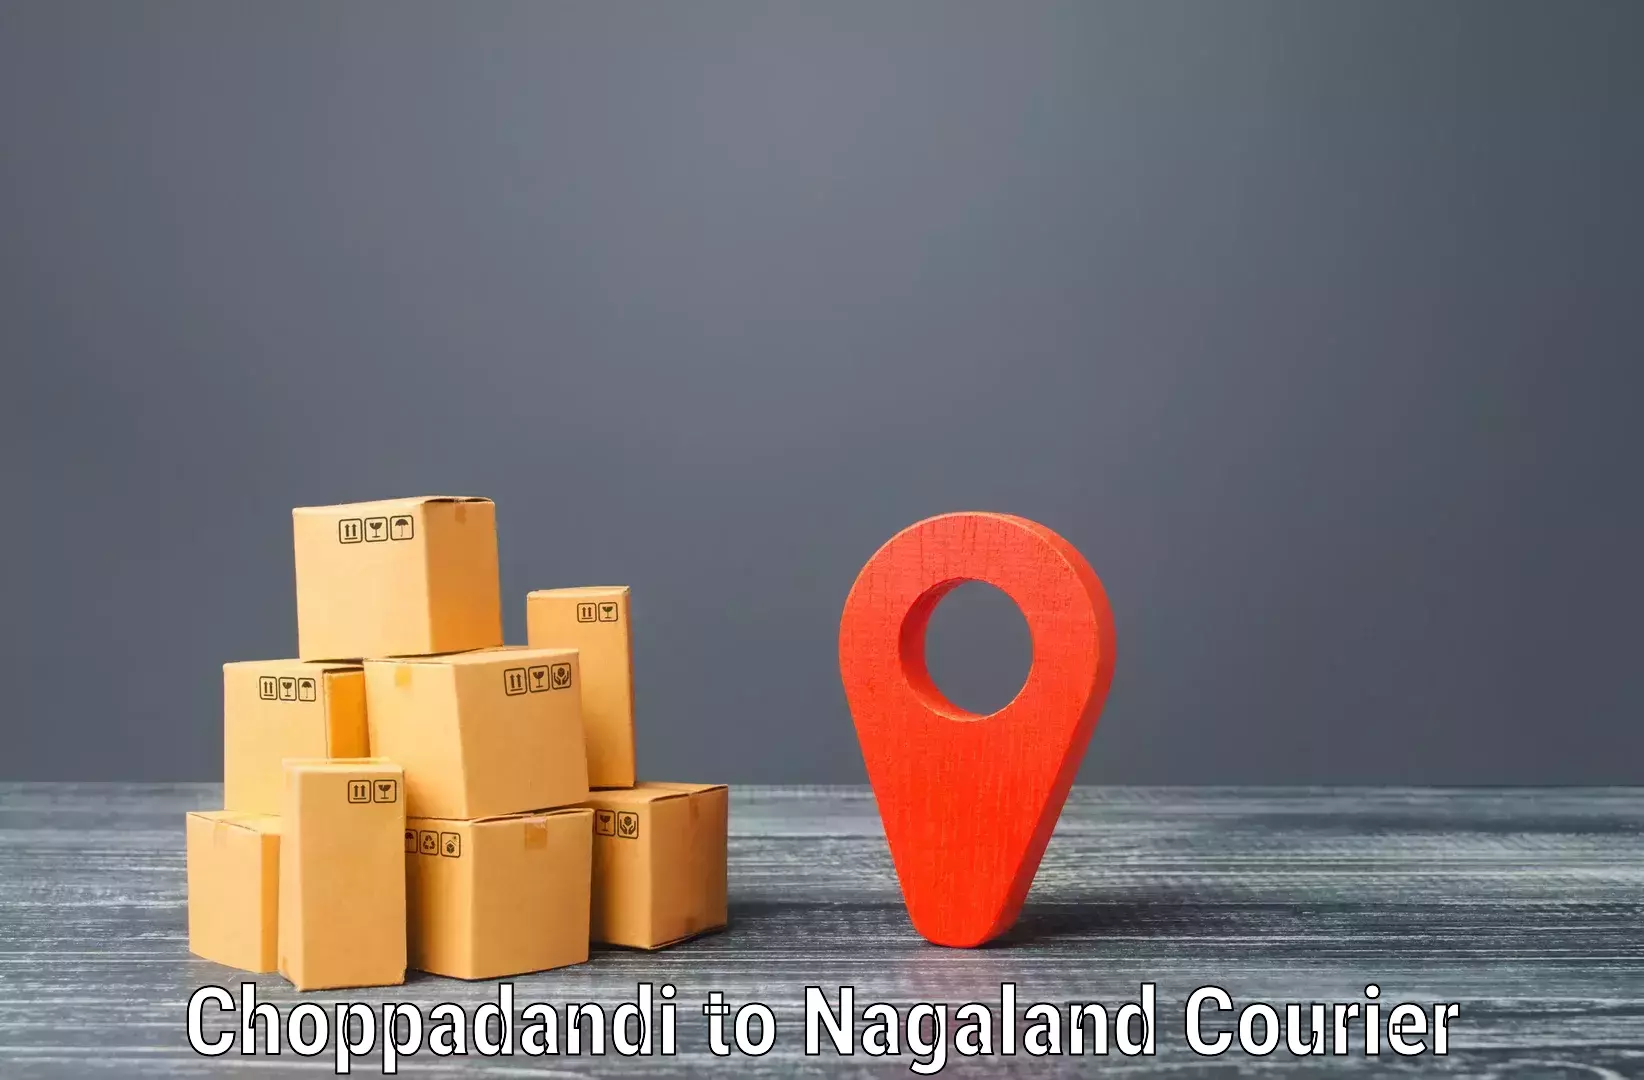 Bulk shipment Choppadandi to NIT Nagaland